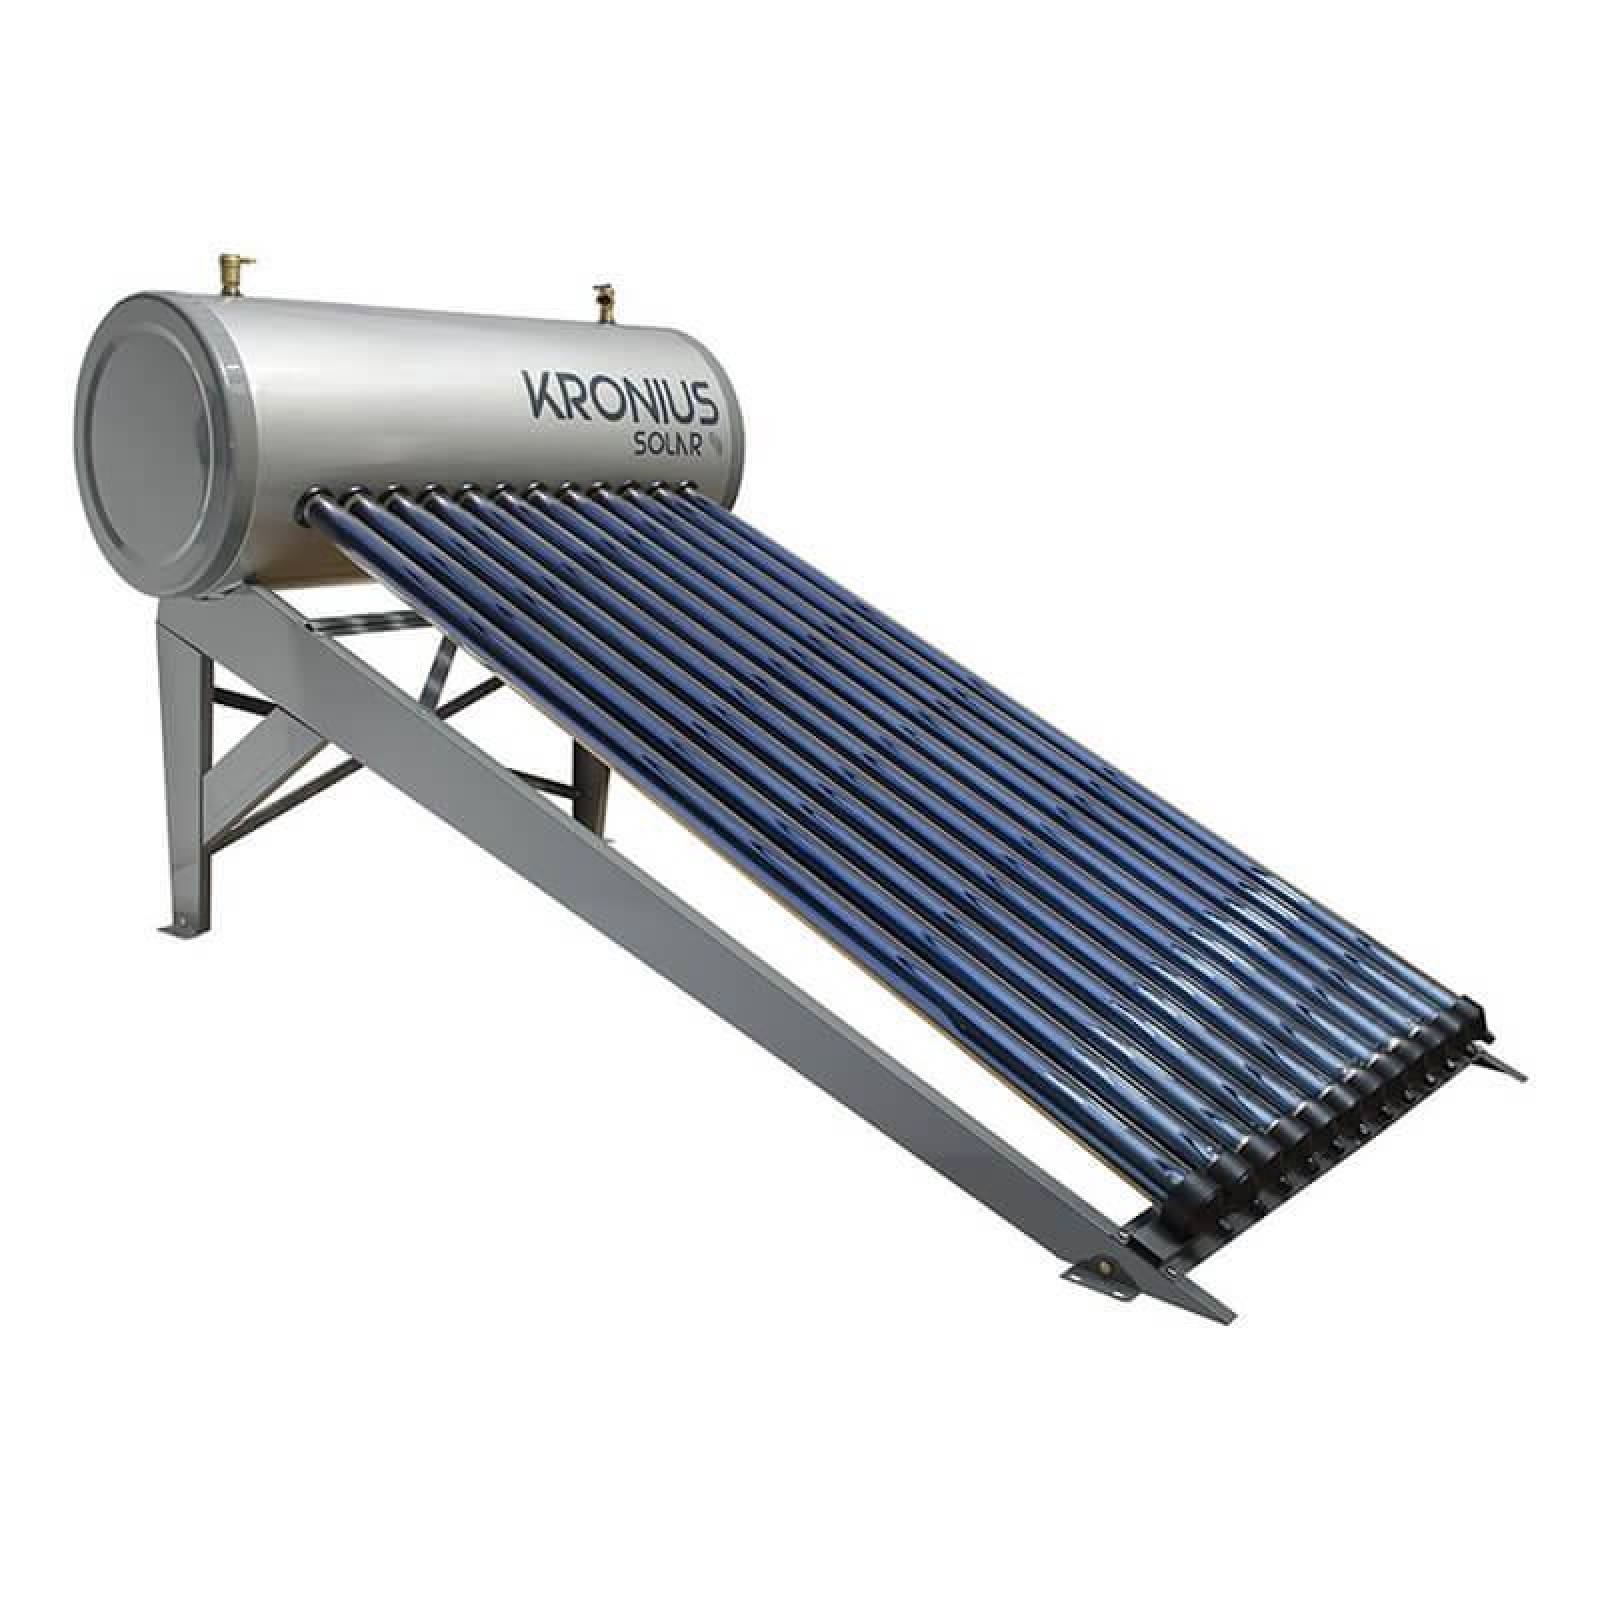 Calentador Solar 16 tubos Kronius 200 L 